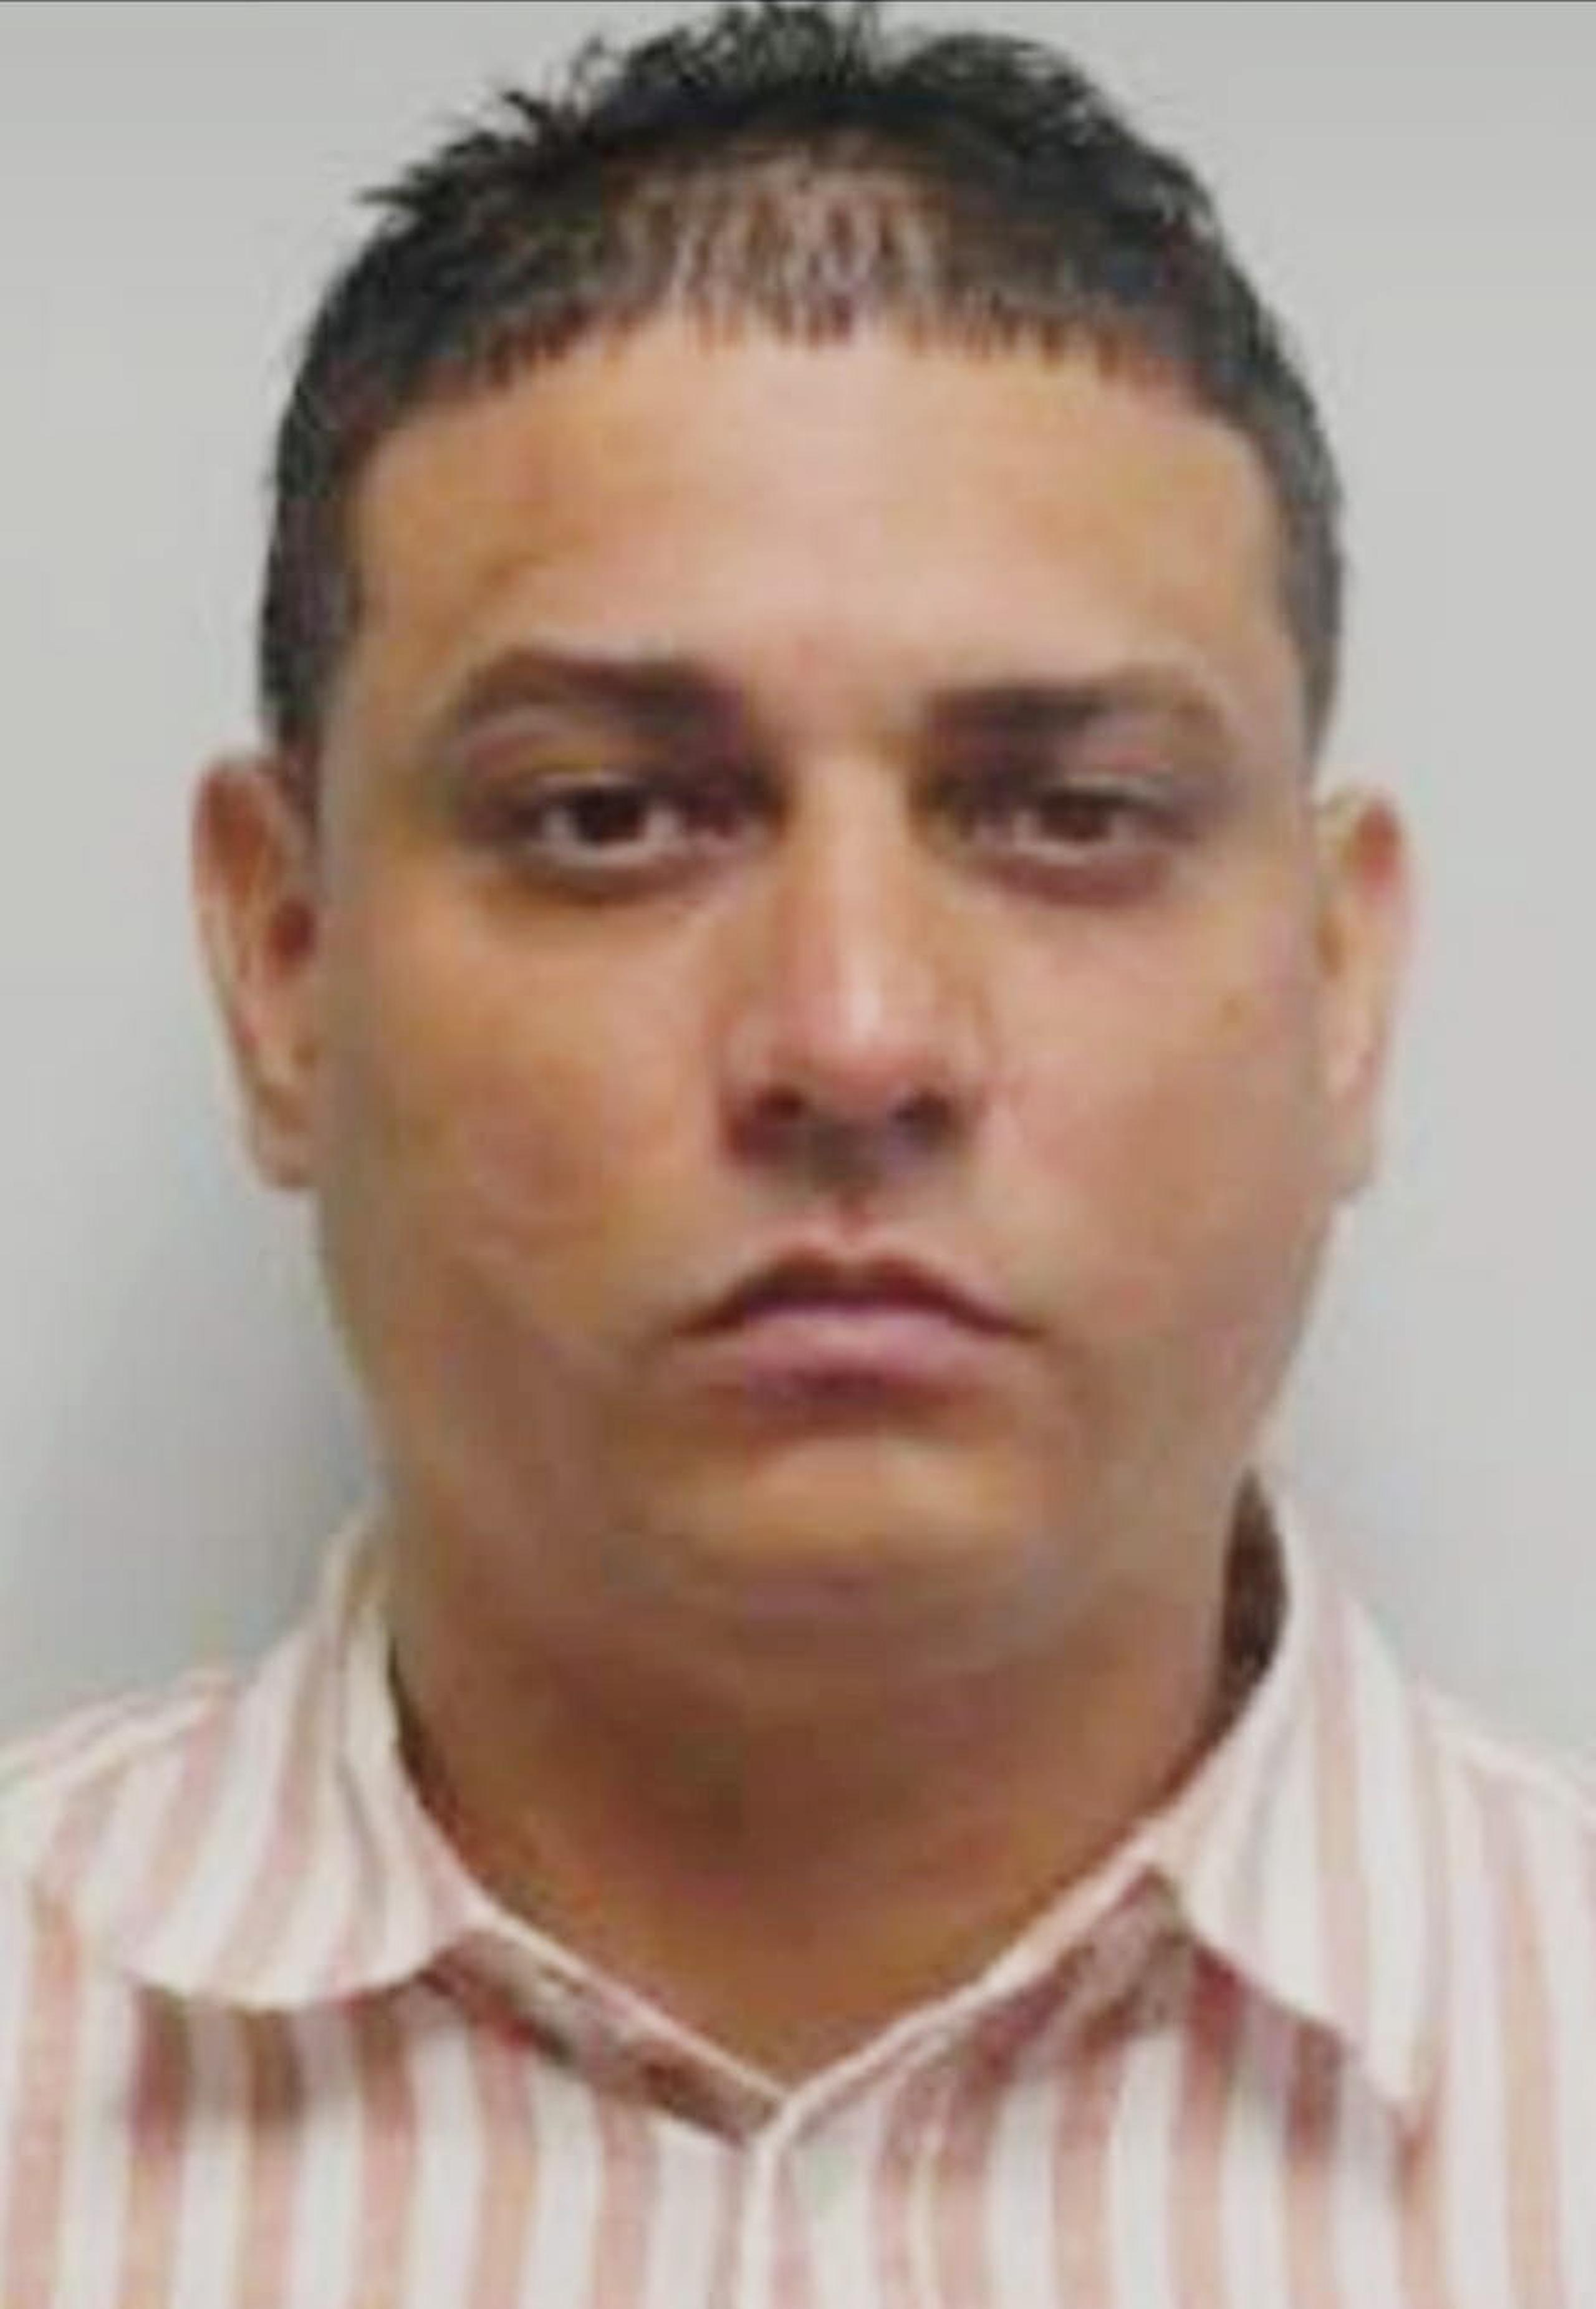 José De Jesús Morales fue arrestado tras ocupar en su vehículo 37 libras de marihuana y se le revocó la probatoria federal que lo mantenía en libertad.